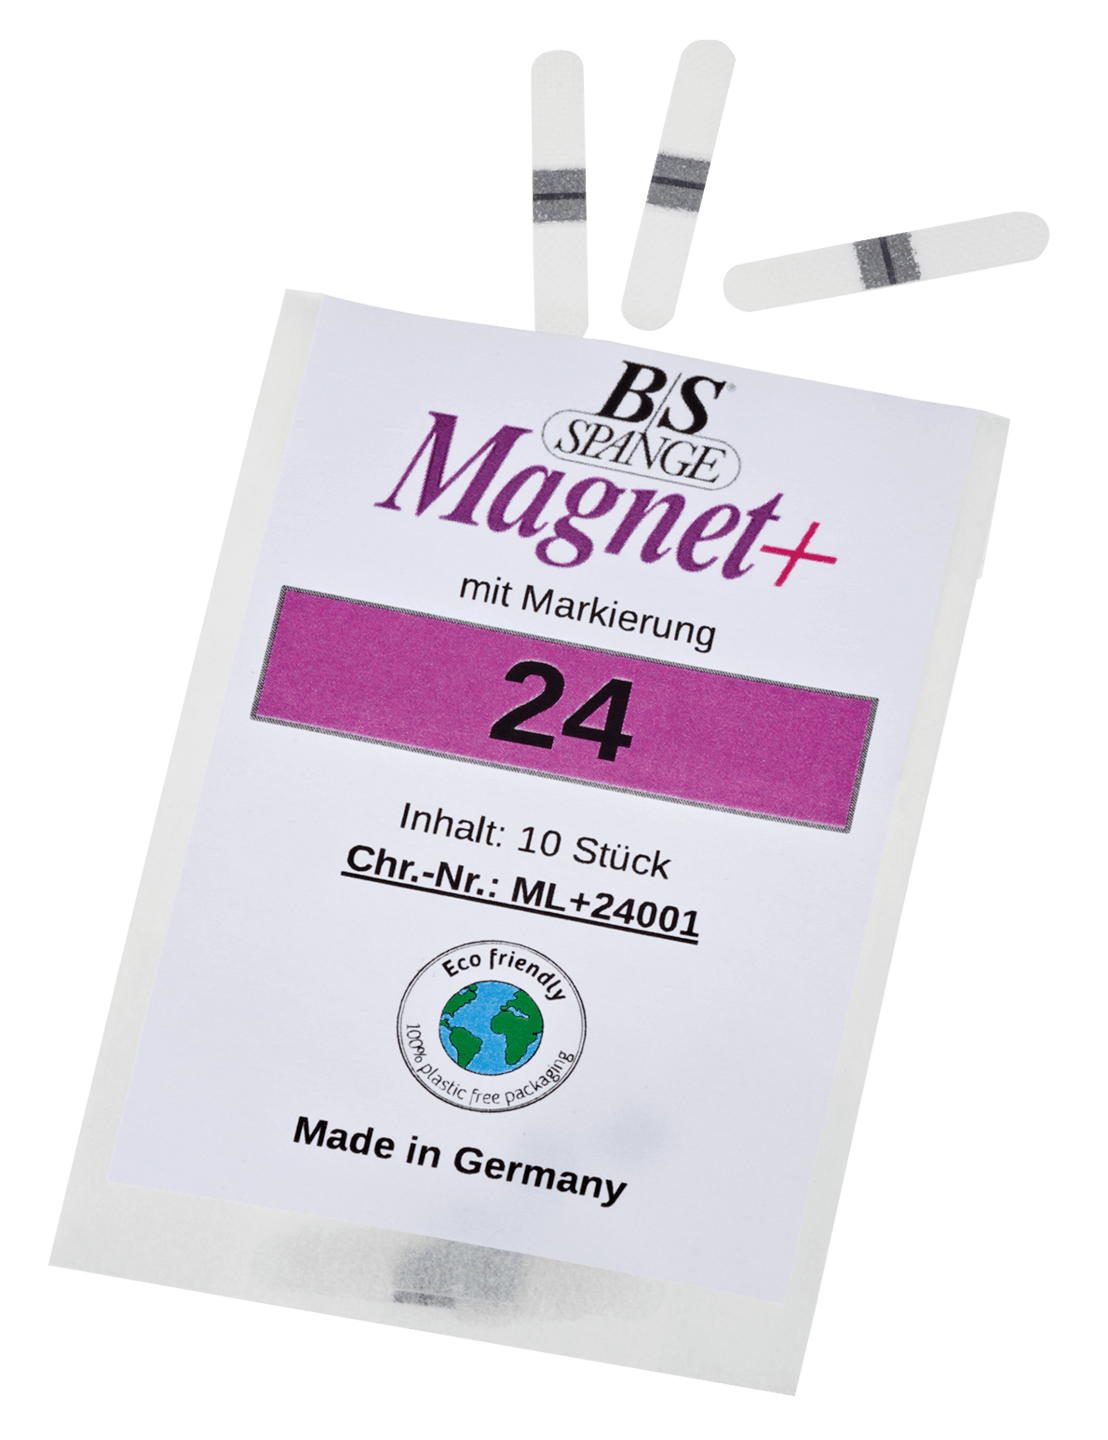 B/S - Magnet+ Spange mit Markierung